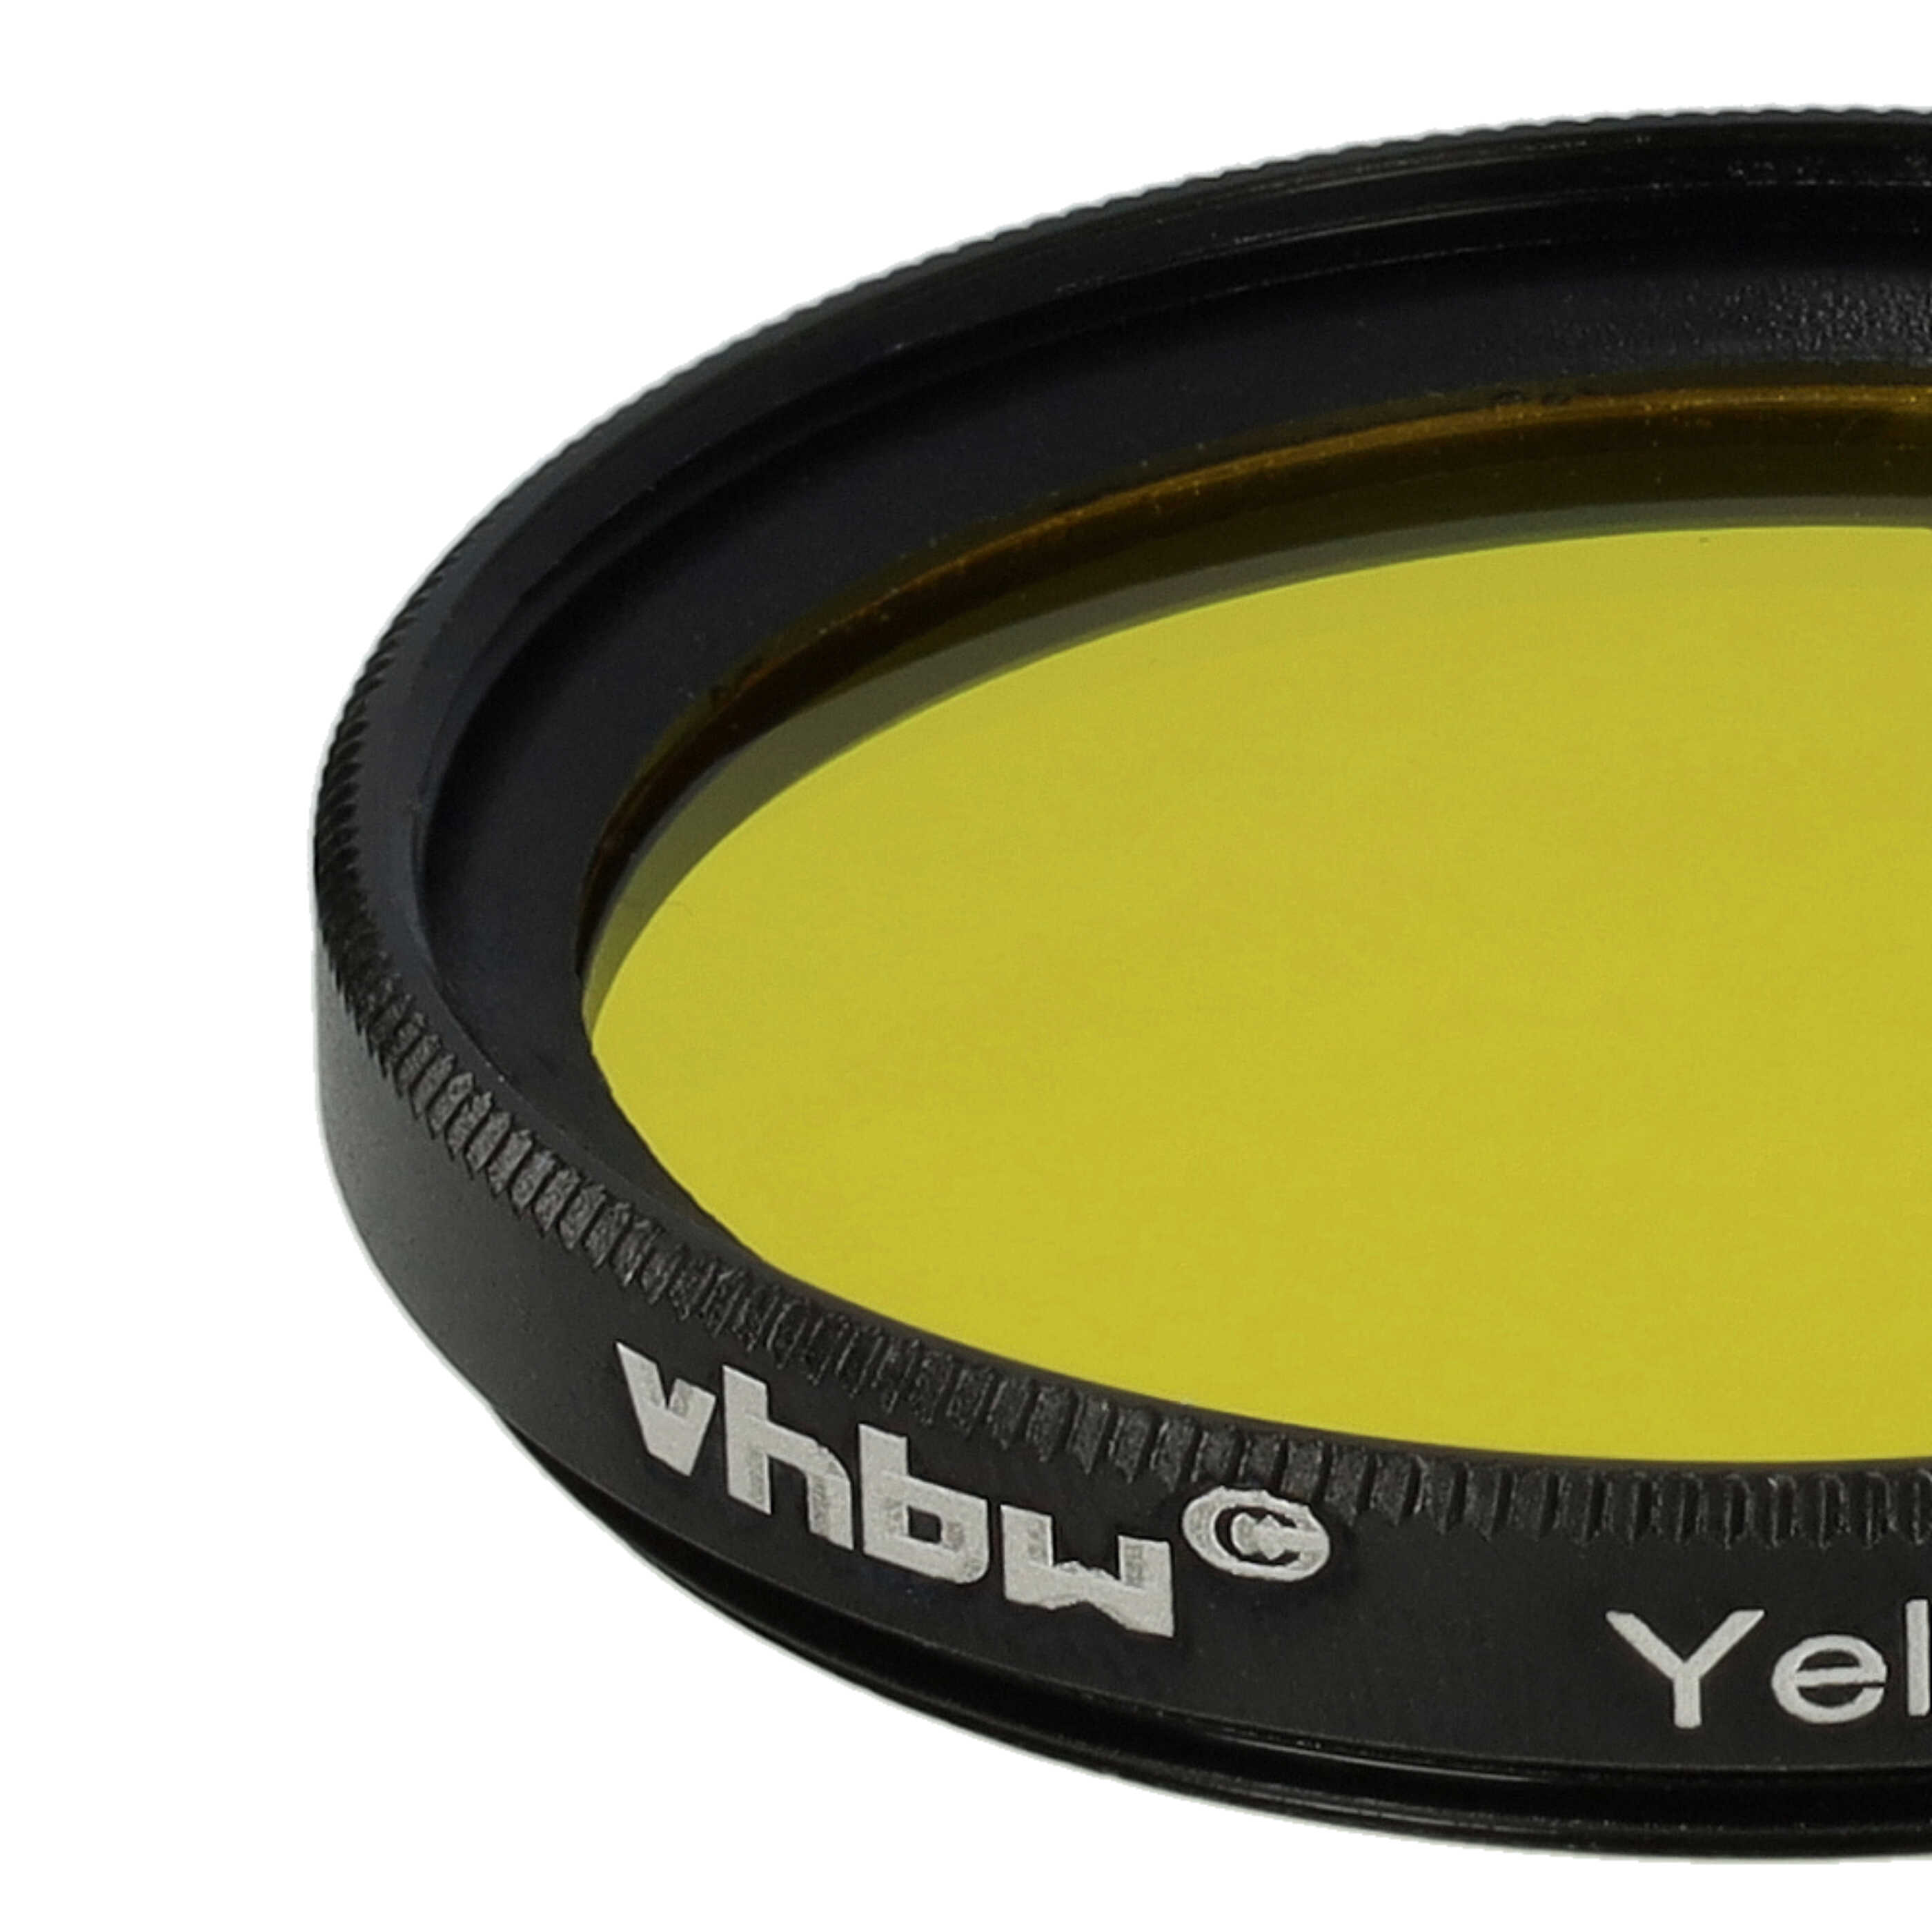 Farbfilter gelb passend für Kamera Objektive mit 37 mm Filtergewinde - Gelbfilter